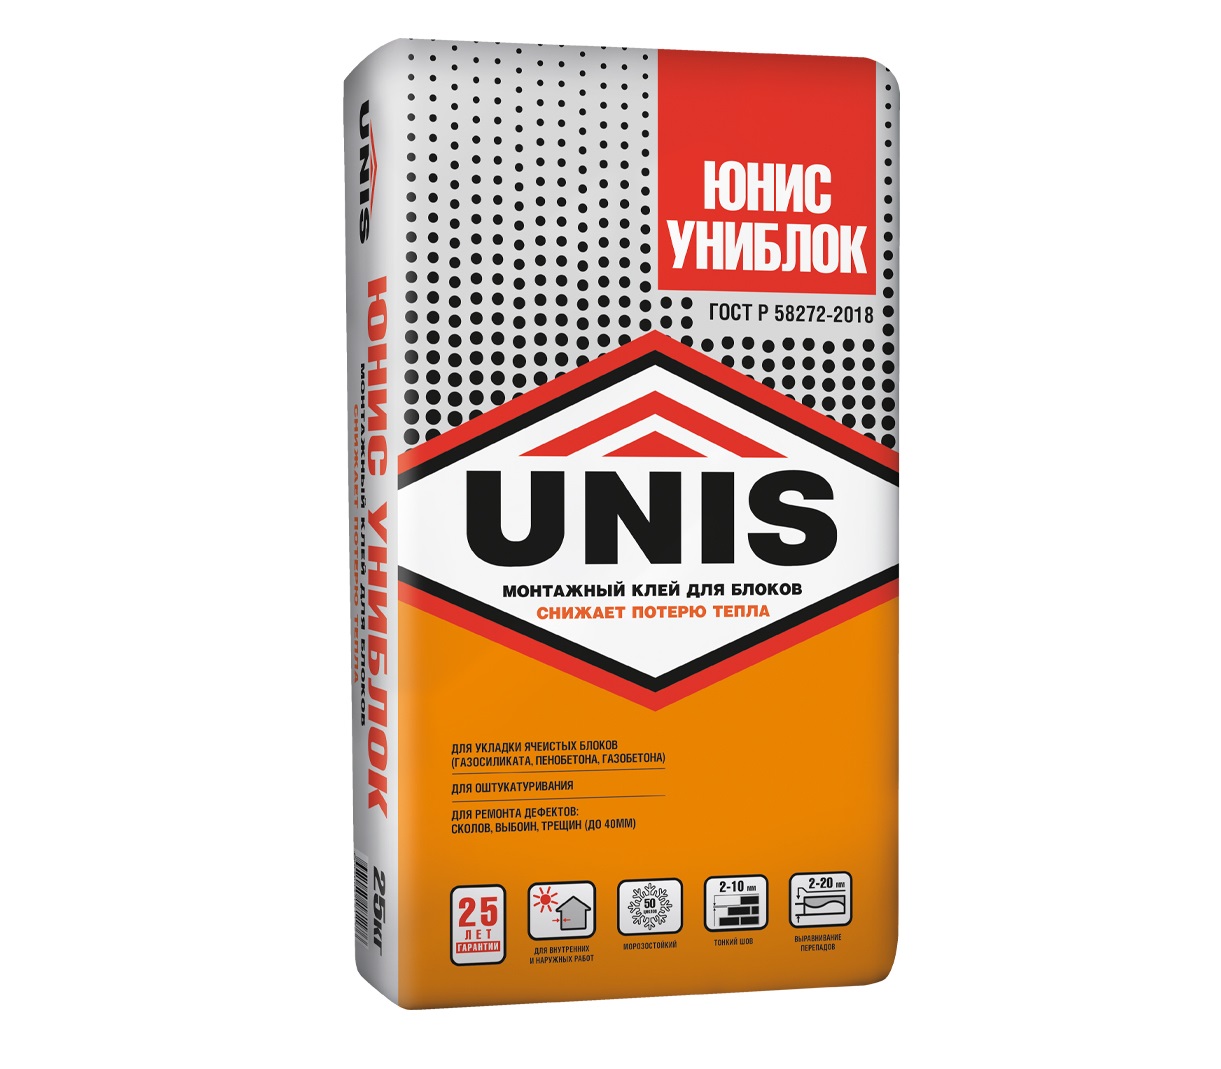 Клей для пеноблока UNIS (Юнис) Униблок 25 кг